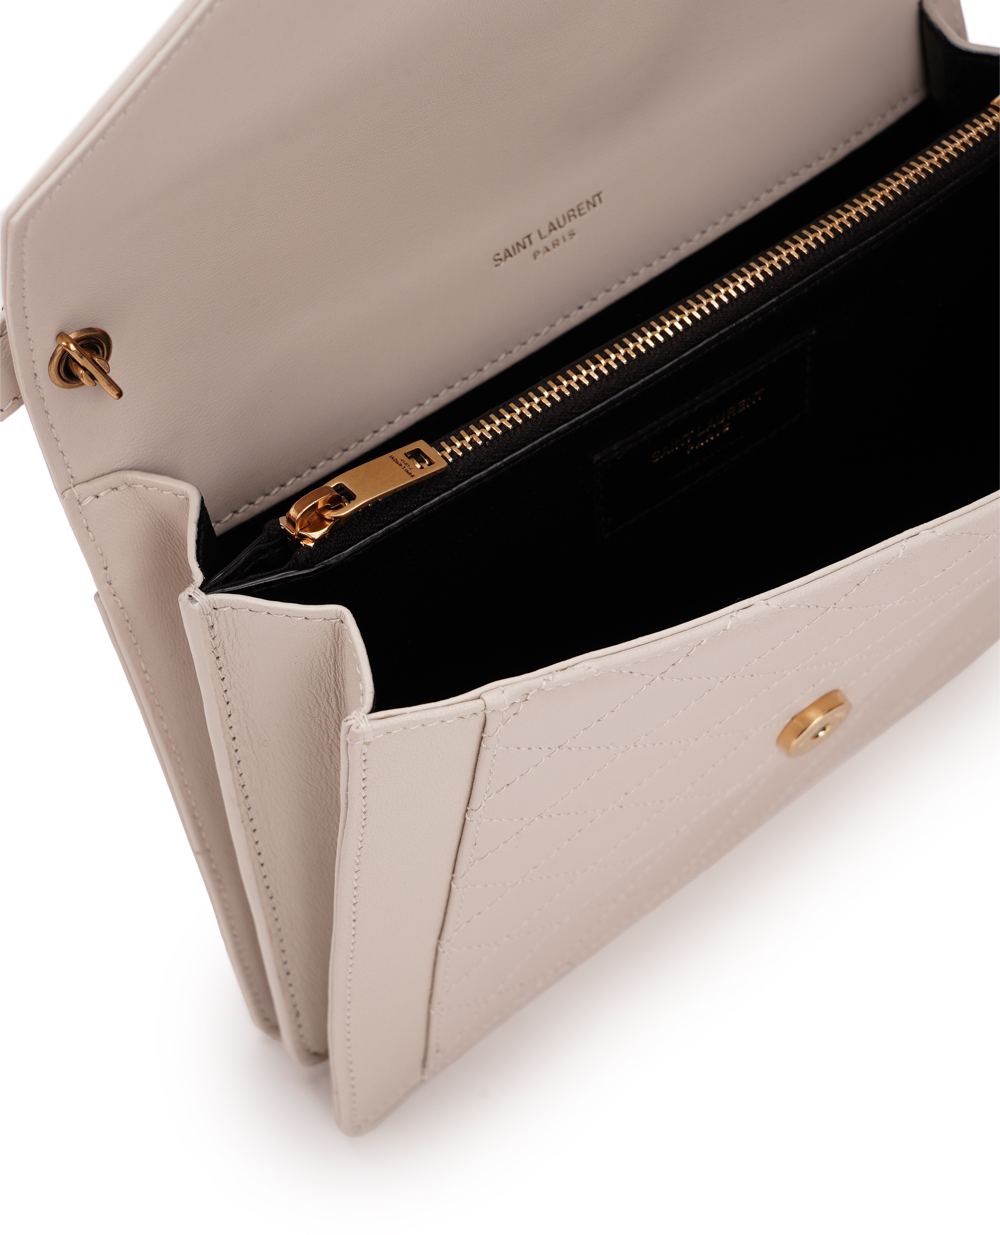 Кожаная сумка Gaby Mini Saint Laurent 685574-1EL07, белый цвет • Купить в интернет-магазине Kameron